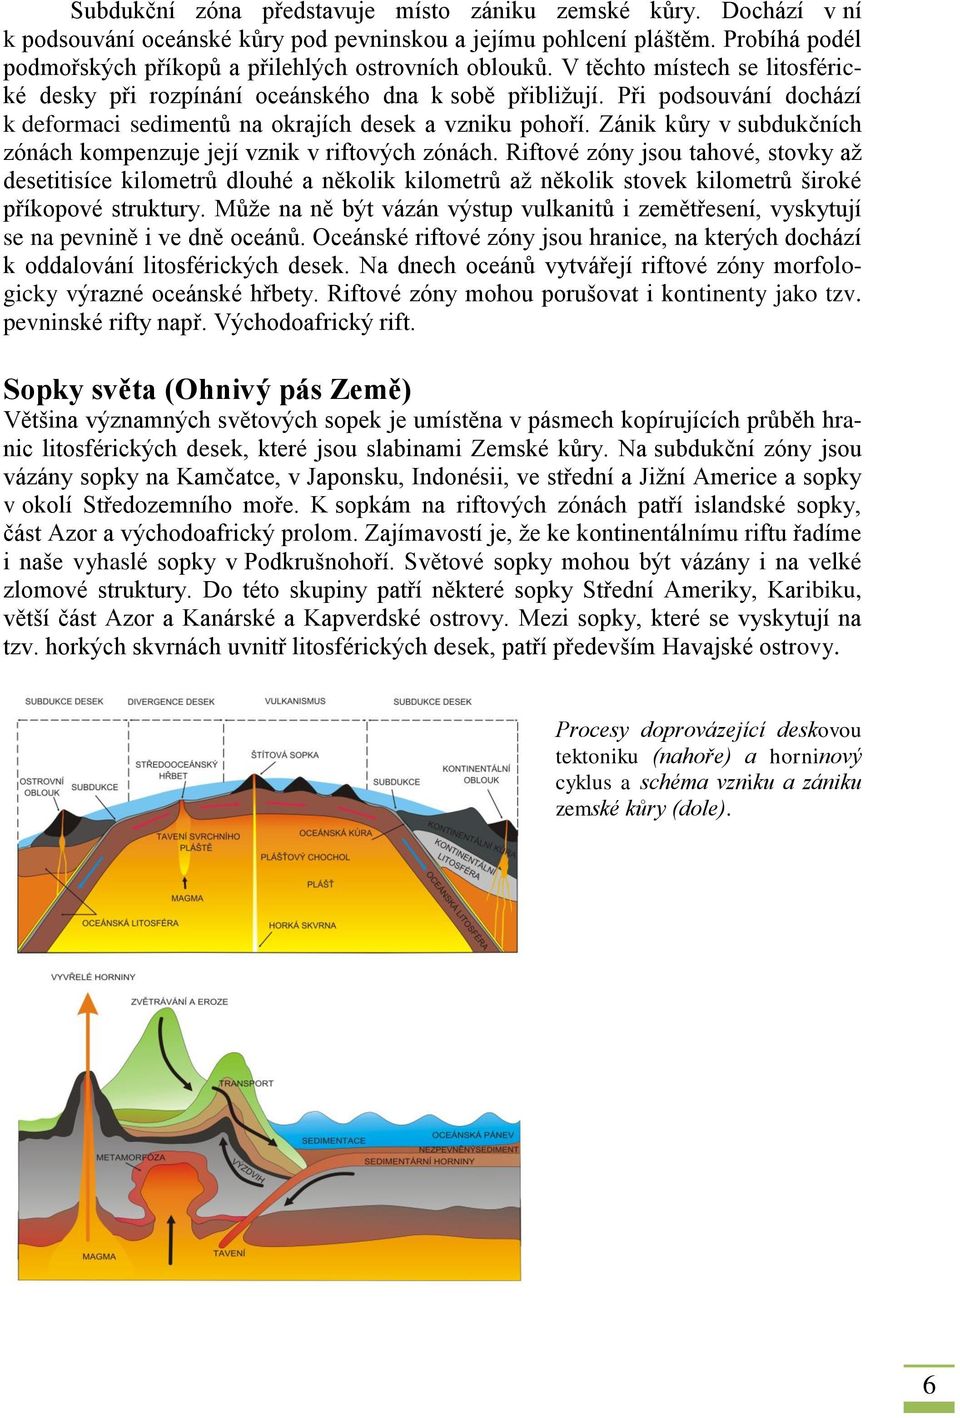 Při podsouvání dochází k deformaci sedimentů na okrajích desek a vzniku pohoří. Zánik kůry v subdukčních zónách kompenzuje její vznik v riftových zónách.